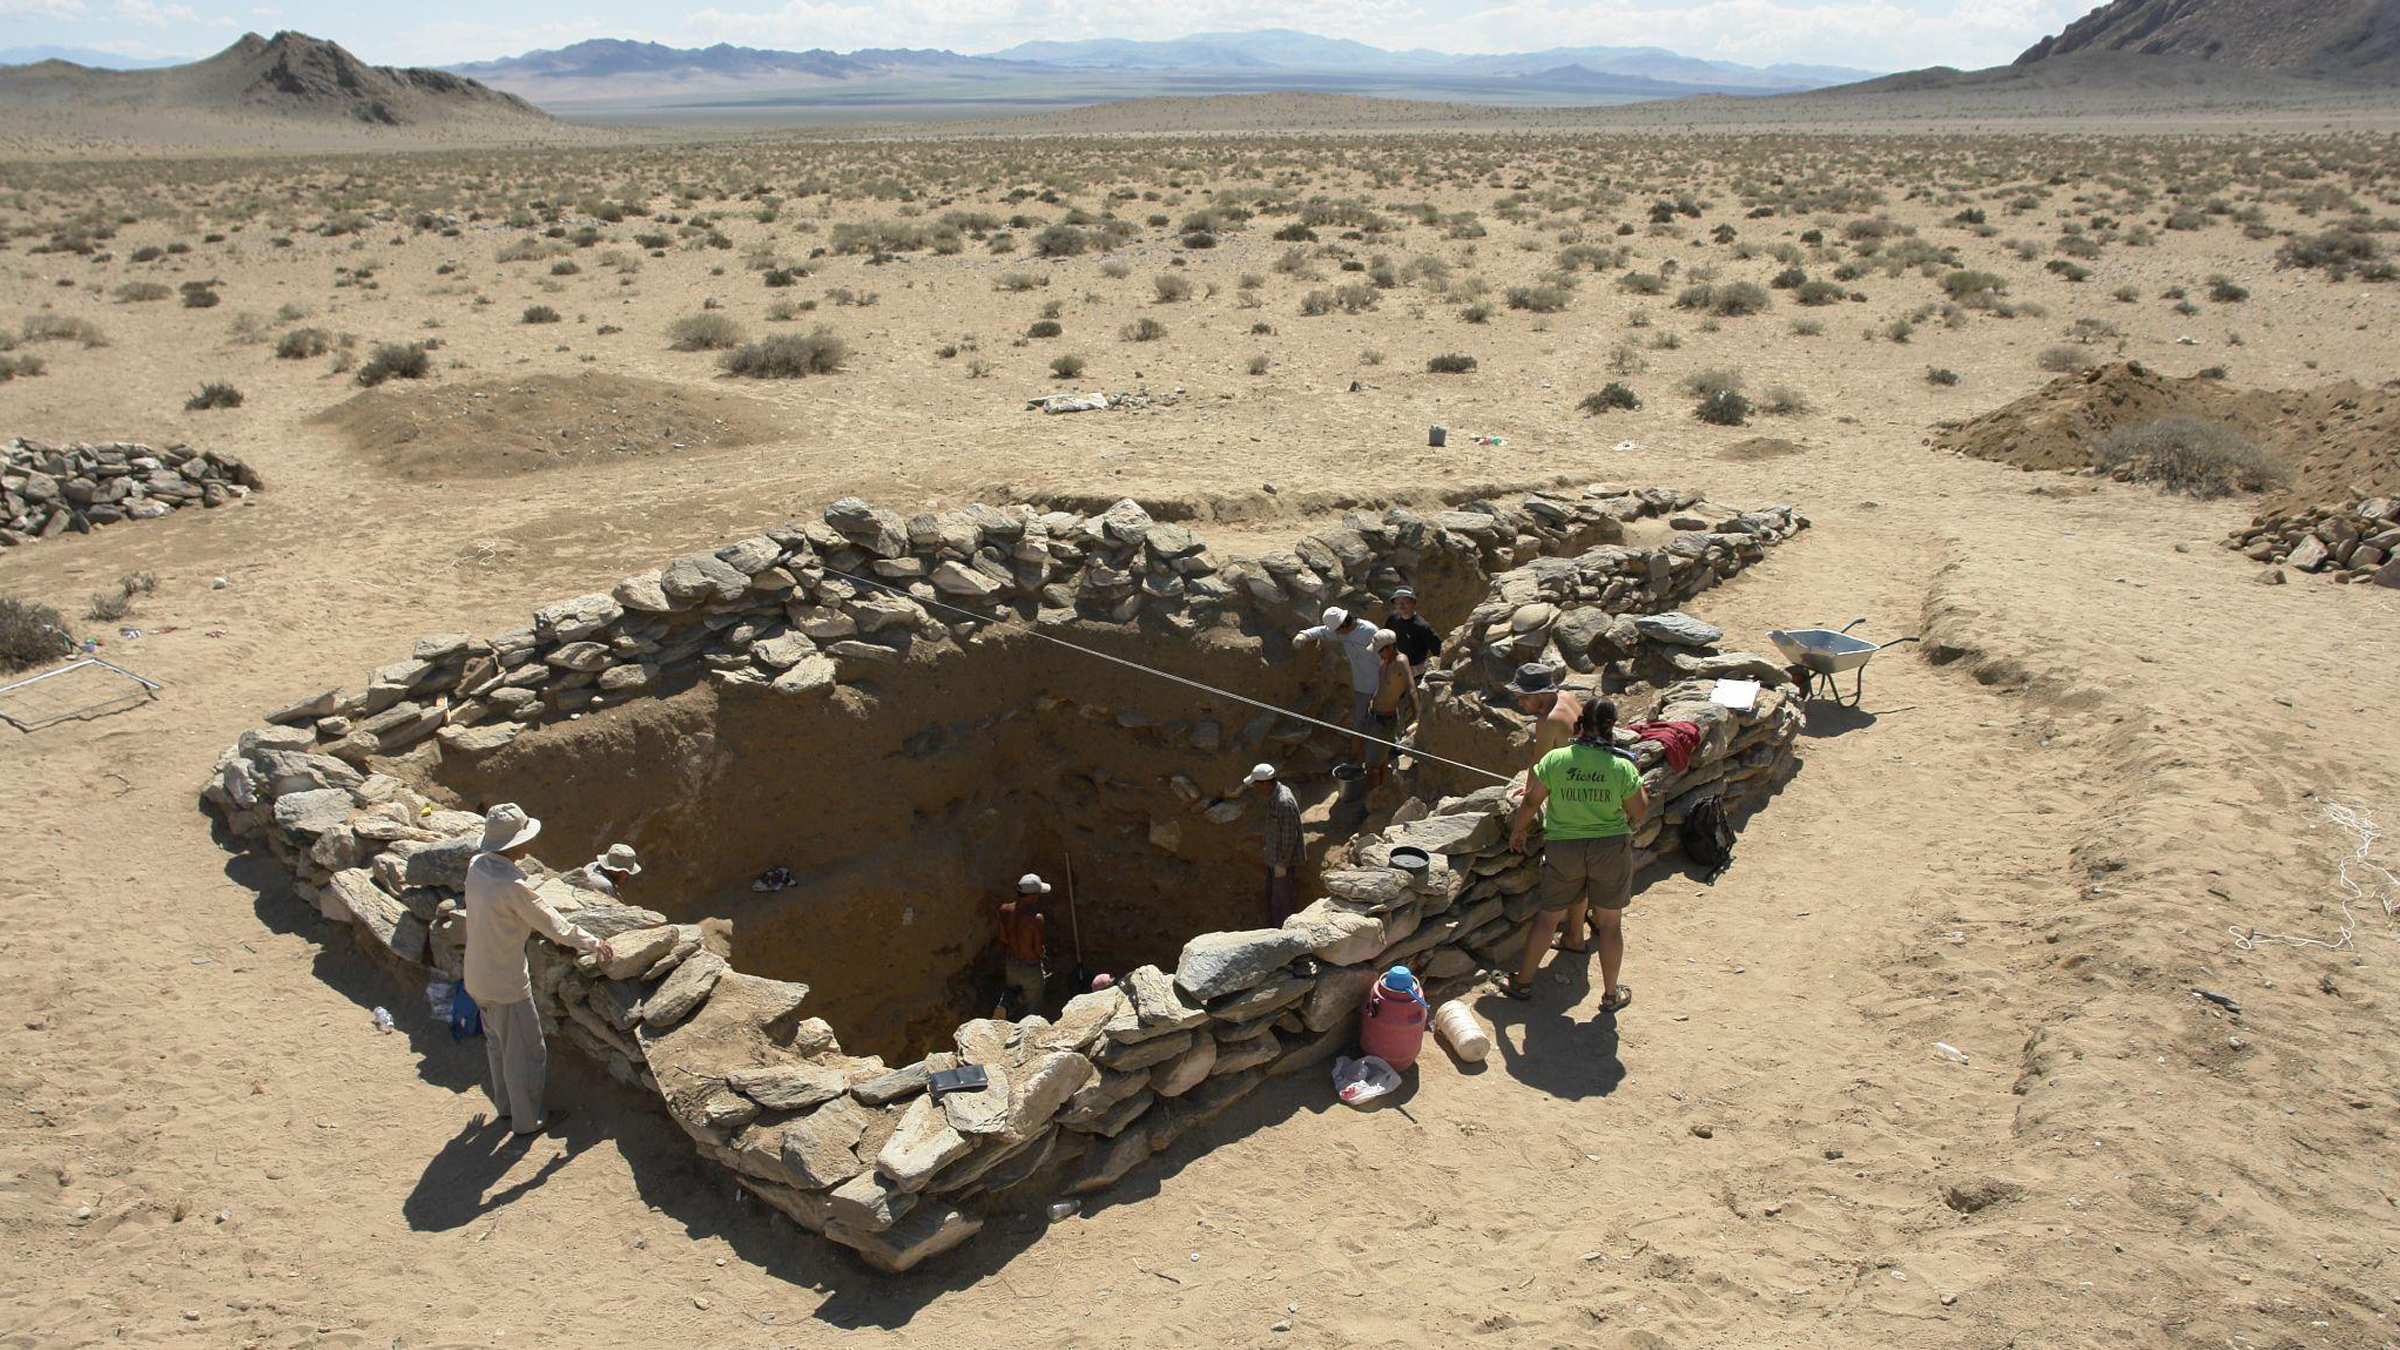 Archäologen untersuchen eine große quadratische Steinbestattung in der Wüste.